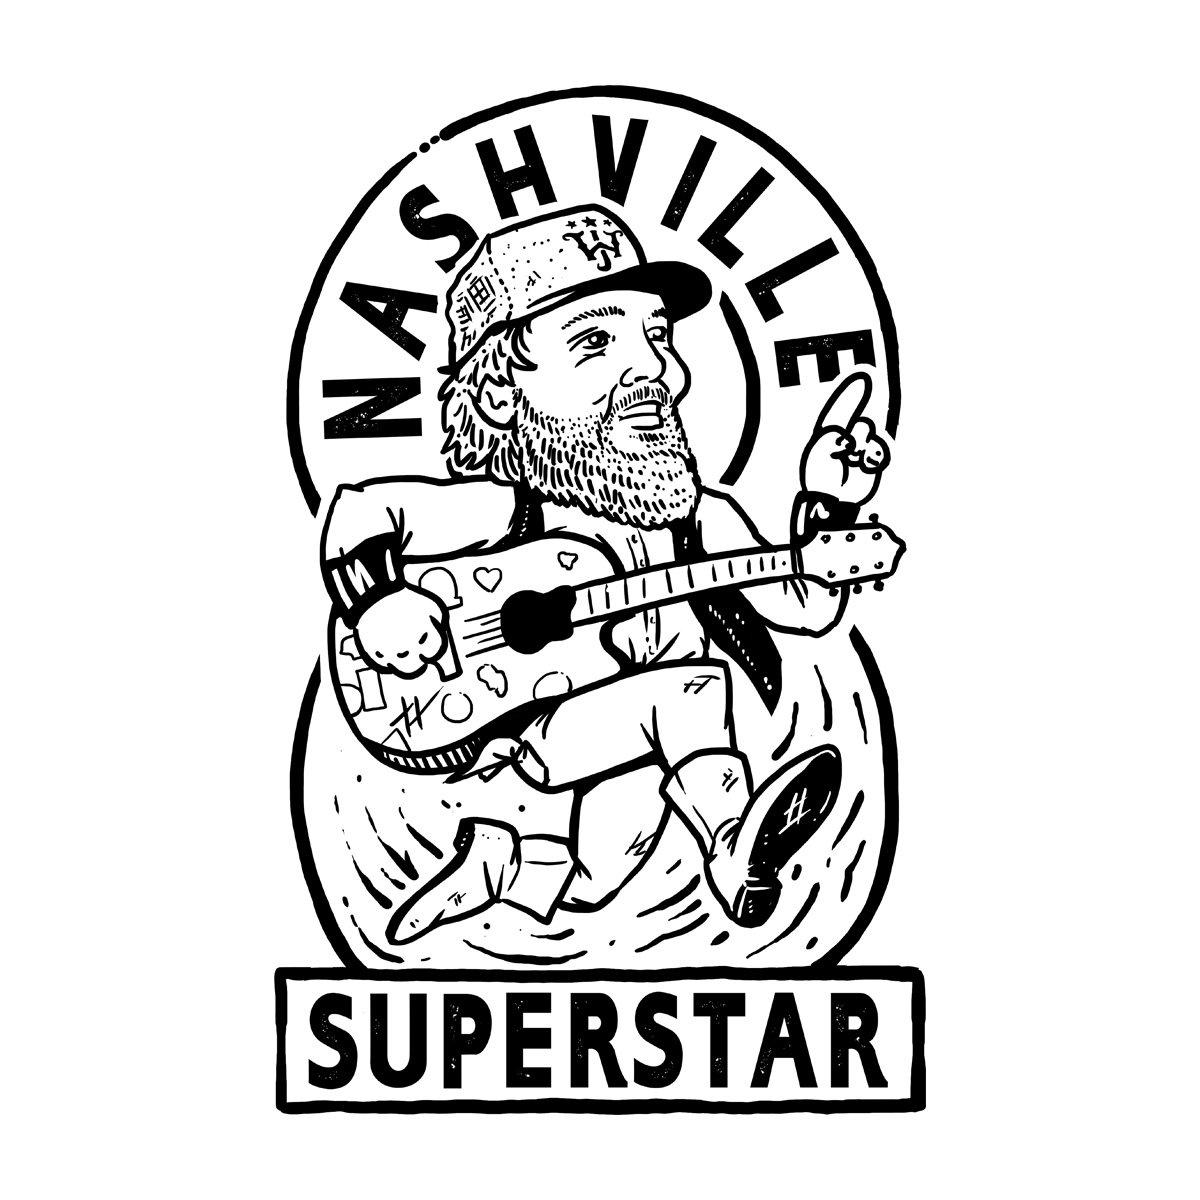 Nashville_Superstar.jpg